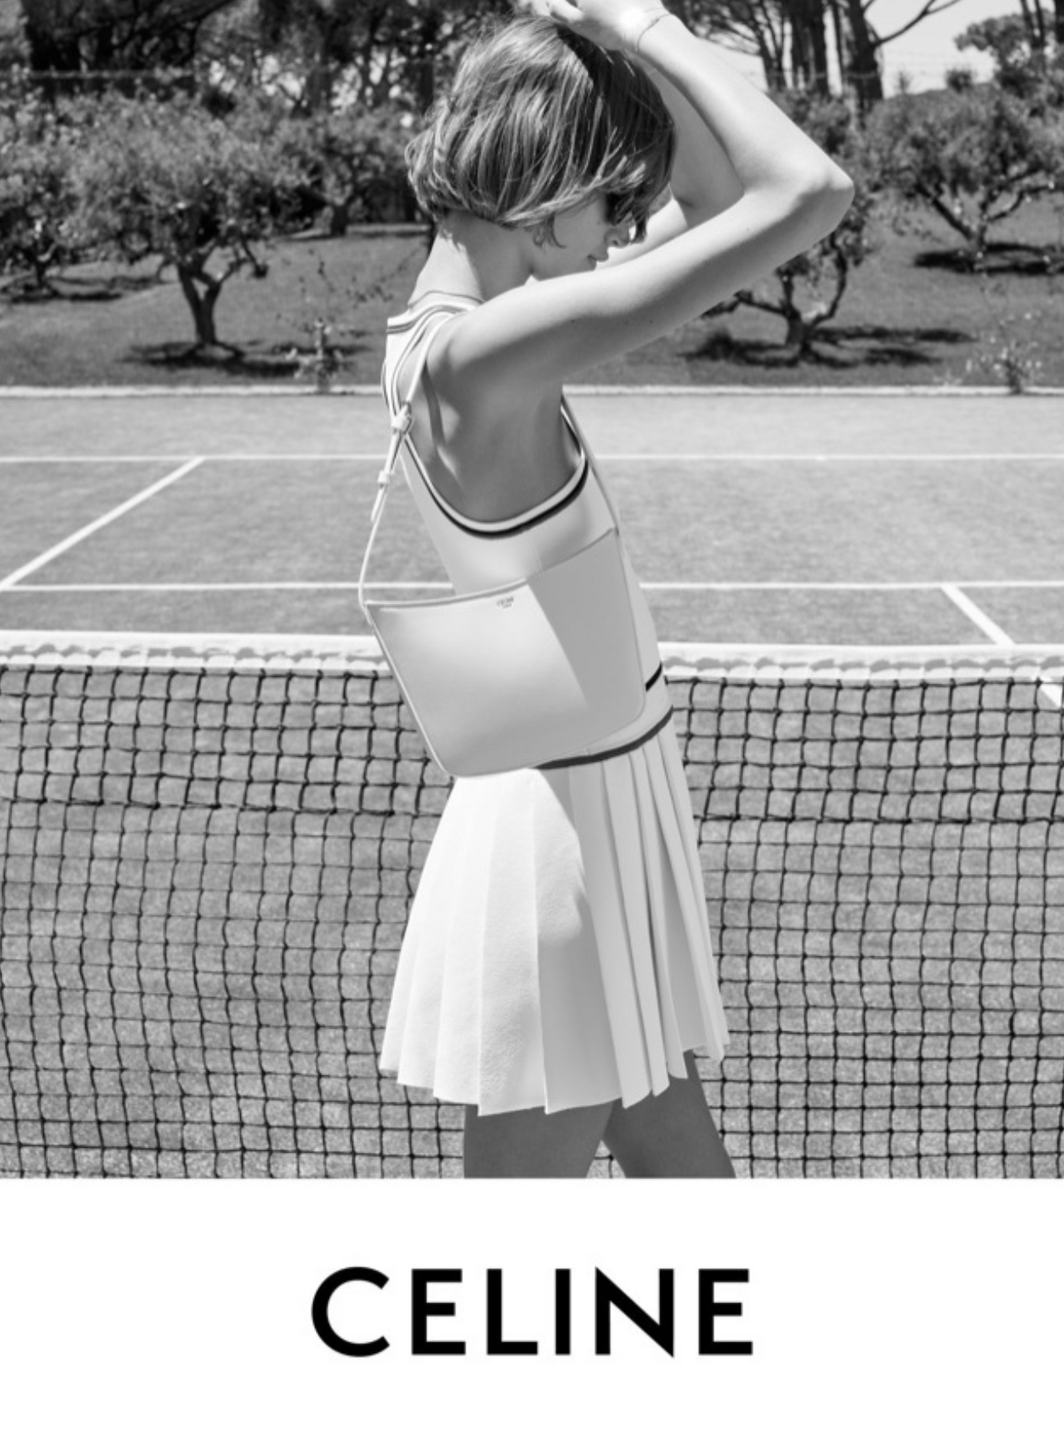 L’extension du domaine de Celine au tennis.